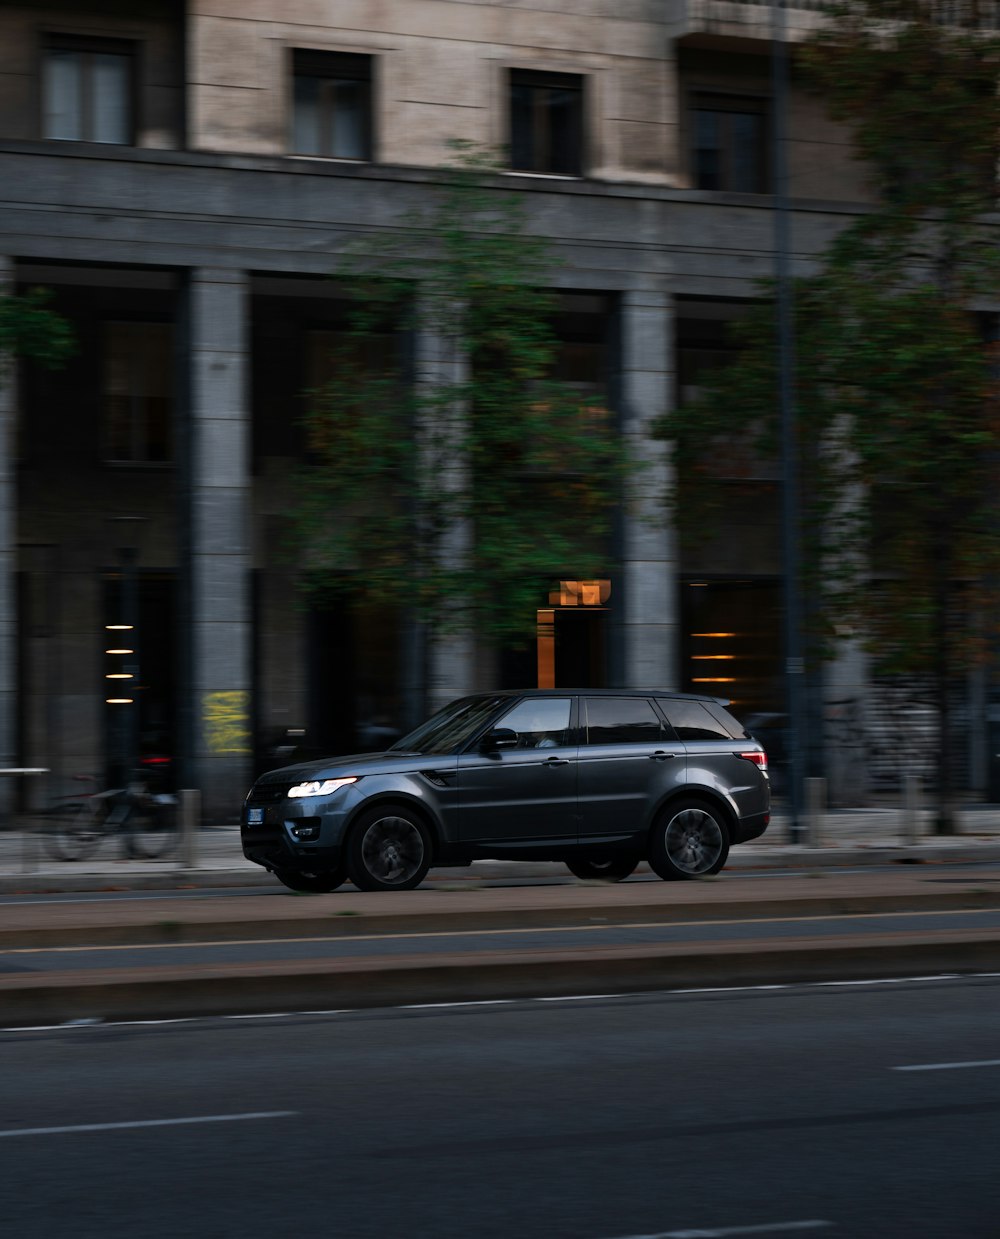 Un SUV negro conduciendo por una calle al lado de un edificio alto